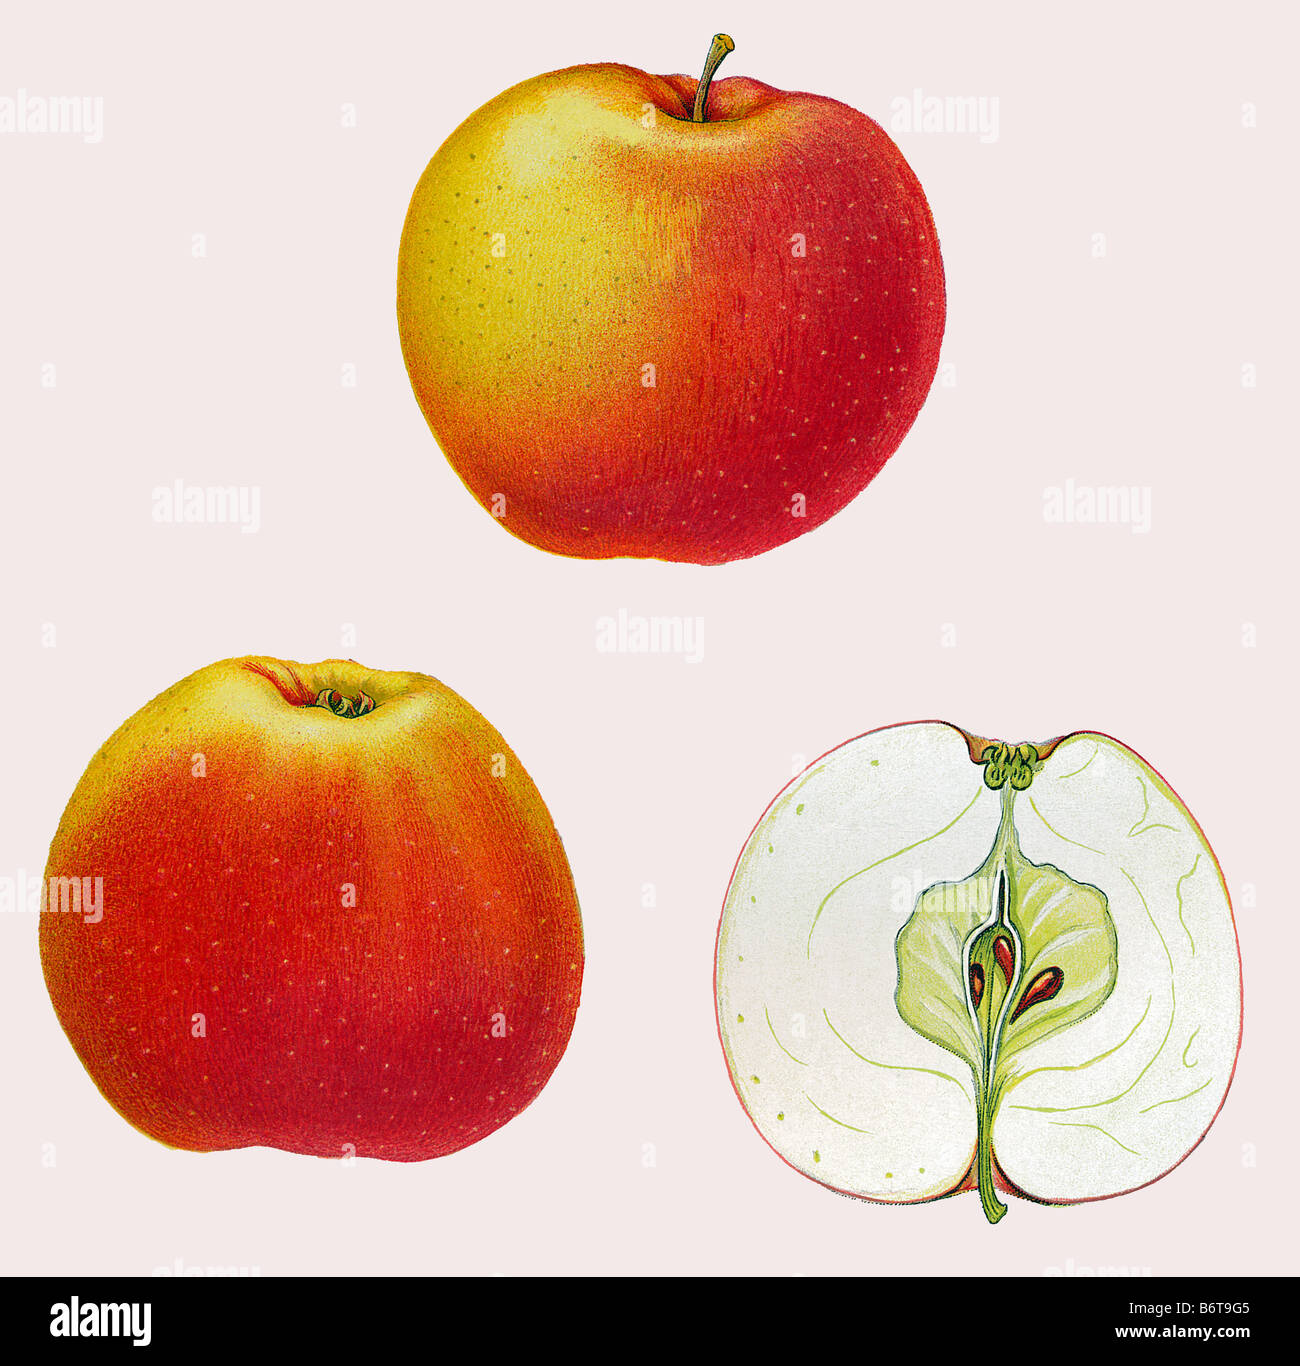 Illustration of the apple 'svanetorpsäpple' Stock Photo